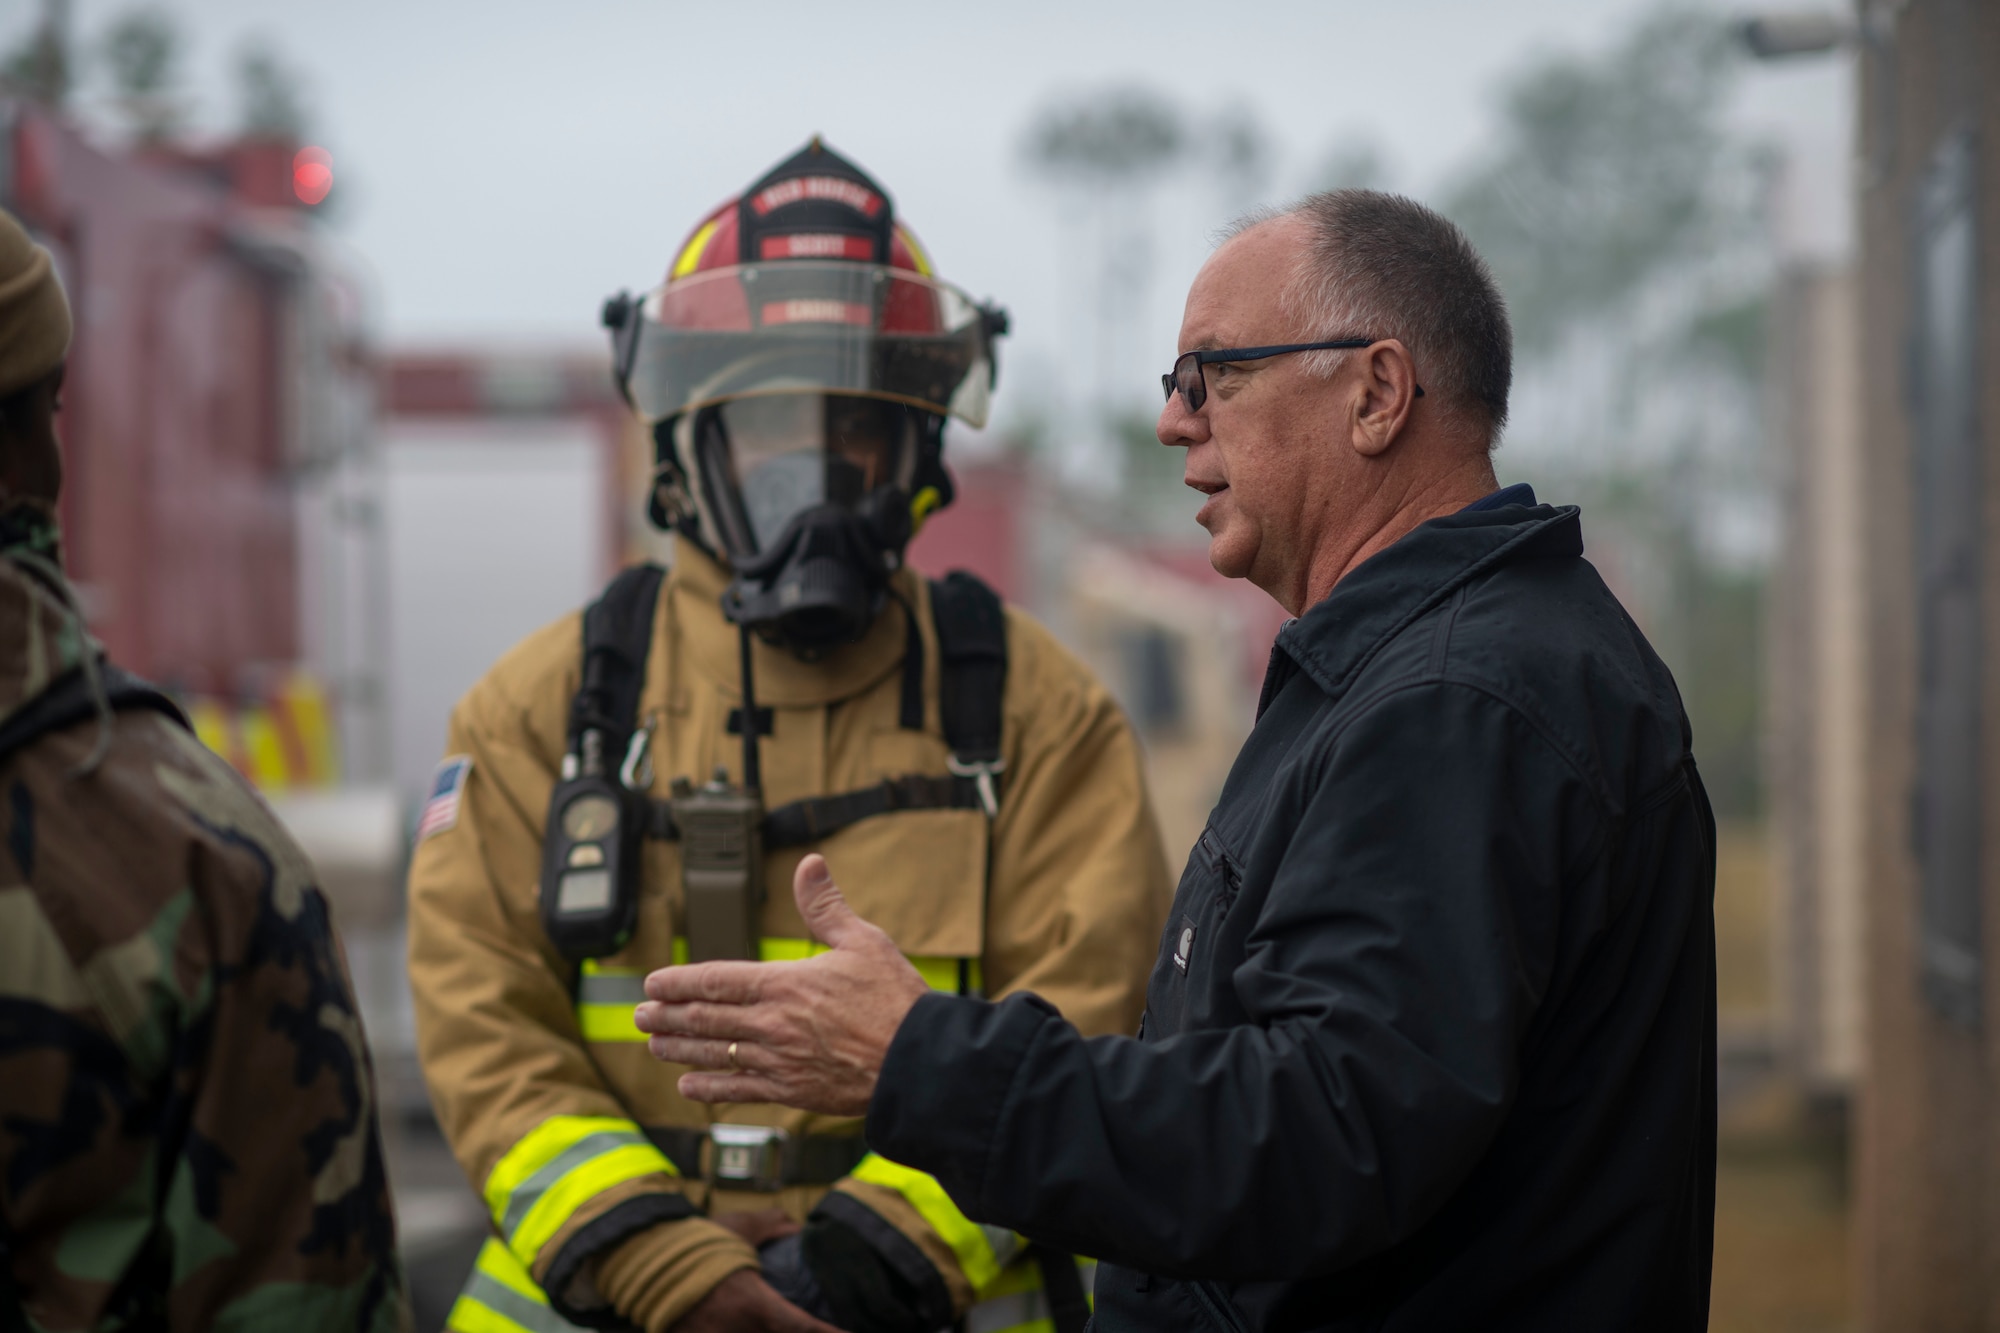 An instructor briefs a group of firemen